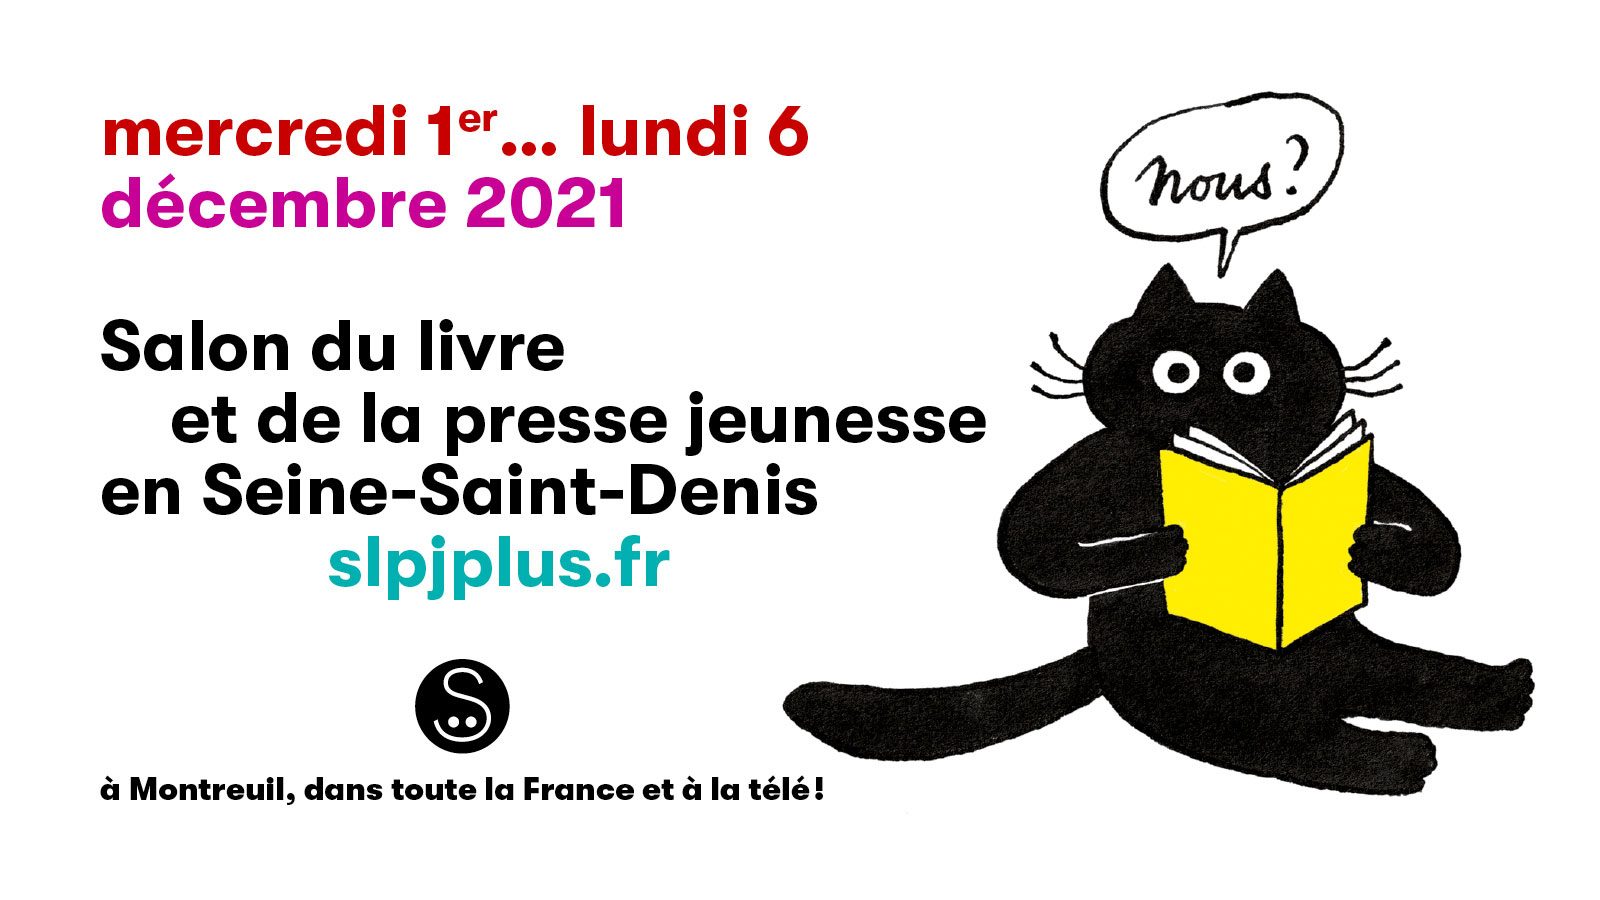 affiche salon du livre et de la presse jeunesse de Montreuil 2021 (un chat noir lit un livre jaune, il dit "nous?")